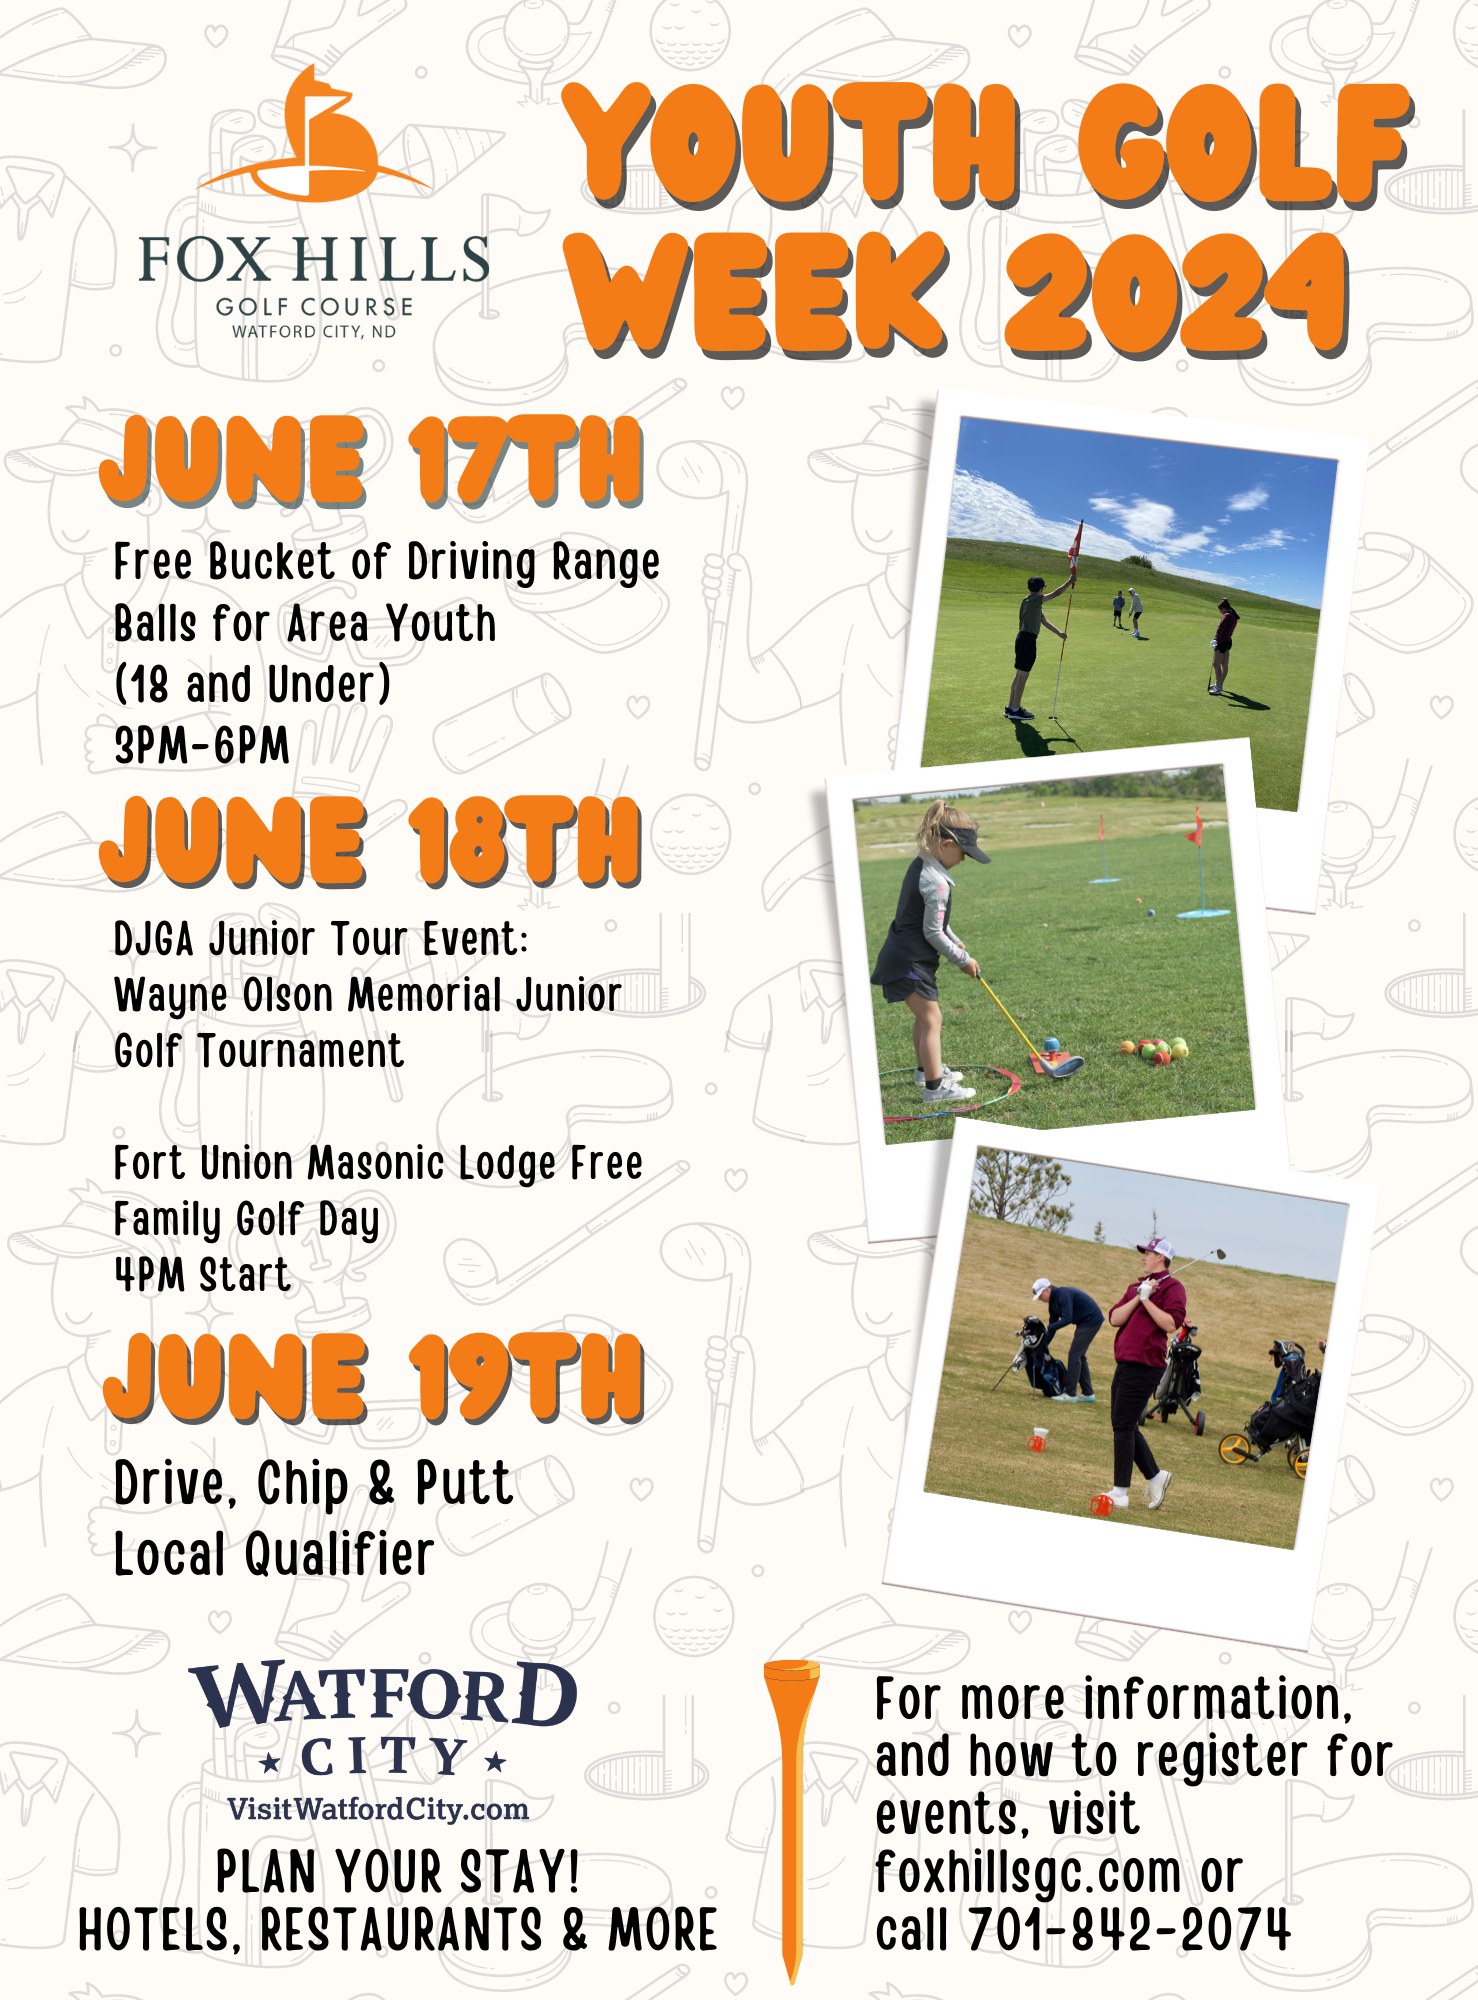 FHGC Youth Golf Week 2024 Flyer 8.5 x 11.5 in 3